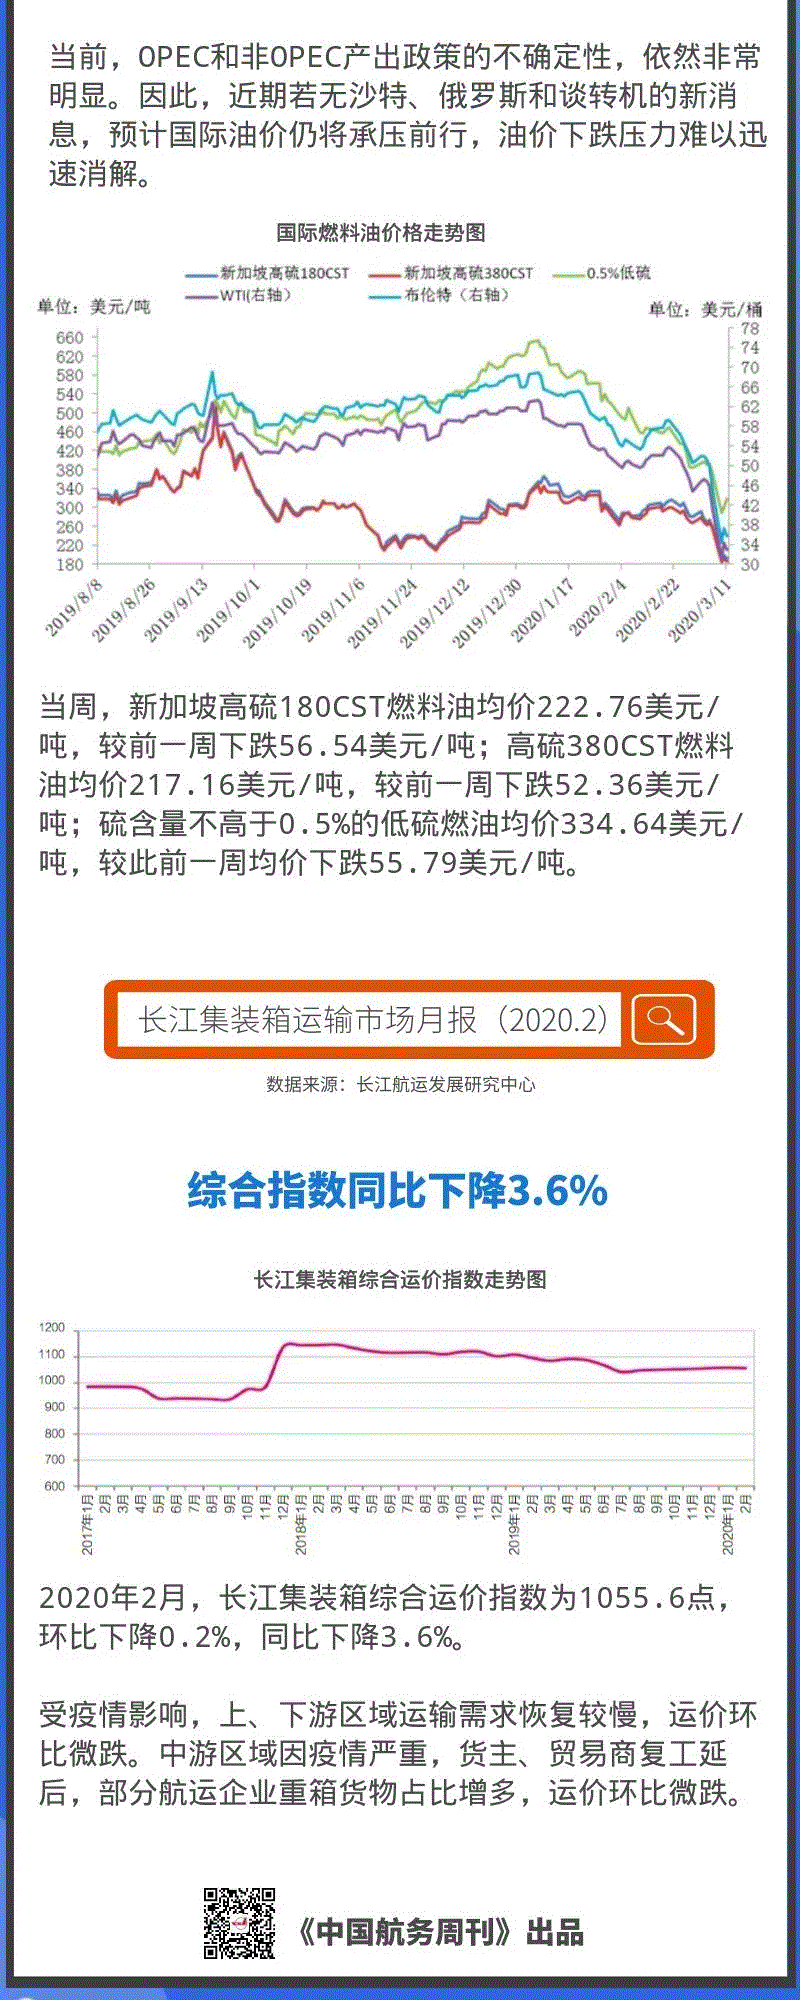 国际航线运价小幅回升；燃油价格全面下跌；长江运价下滑 